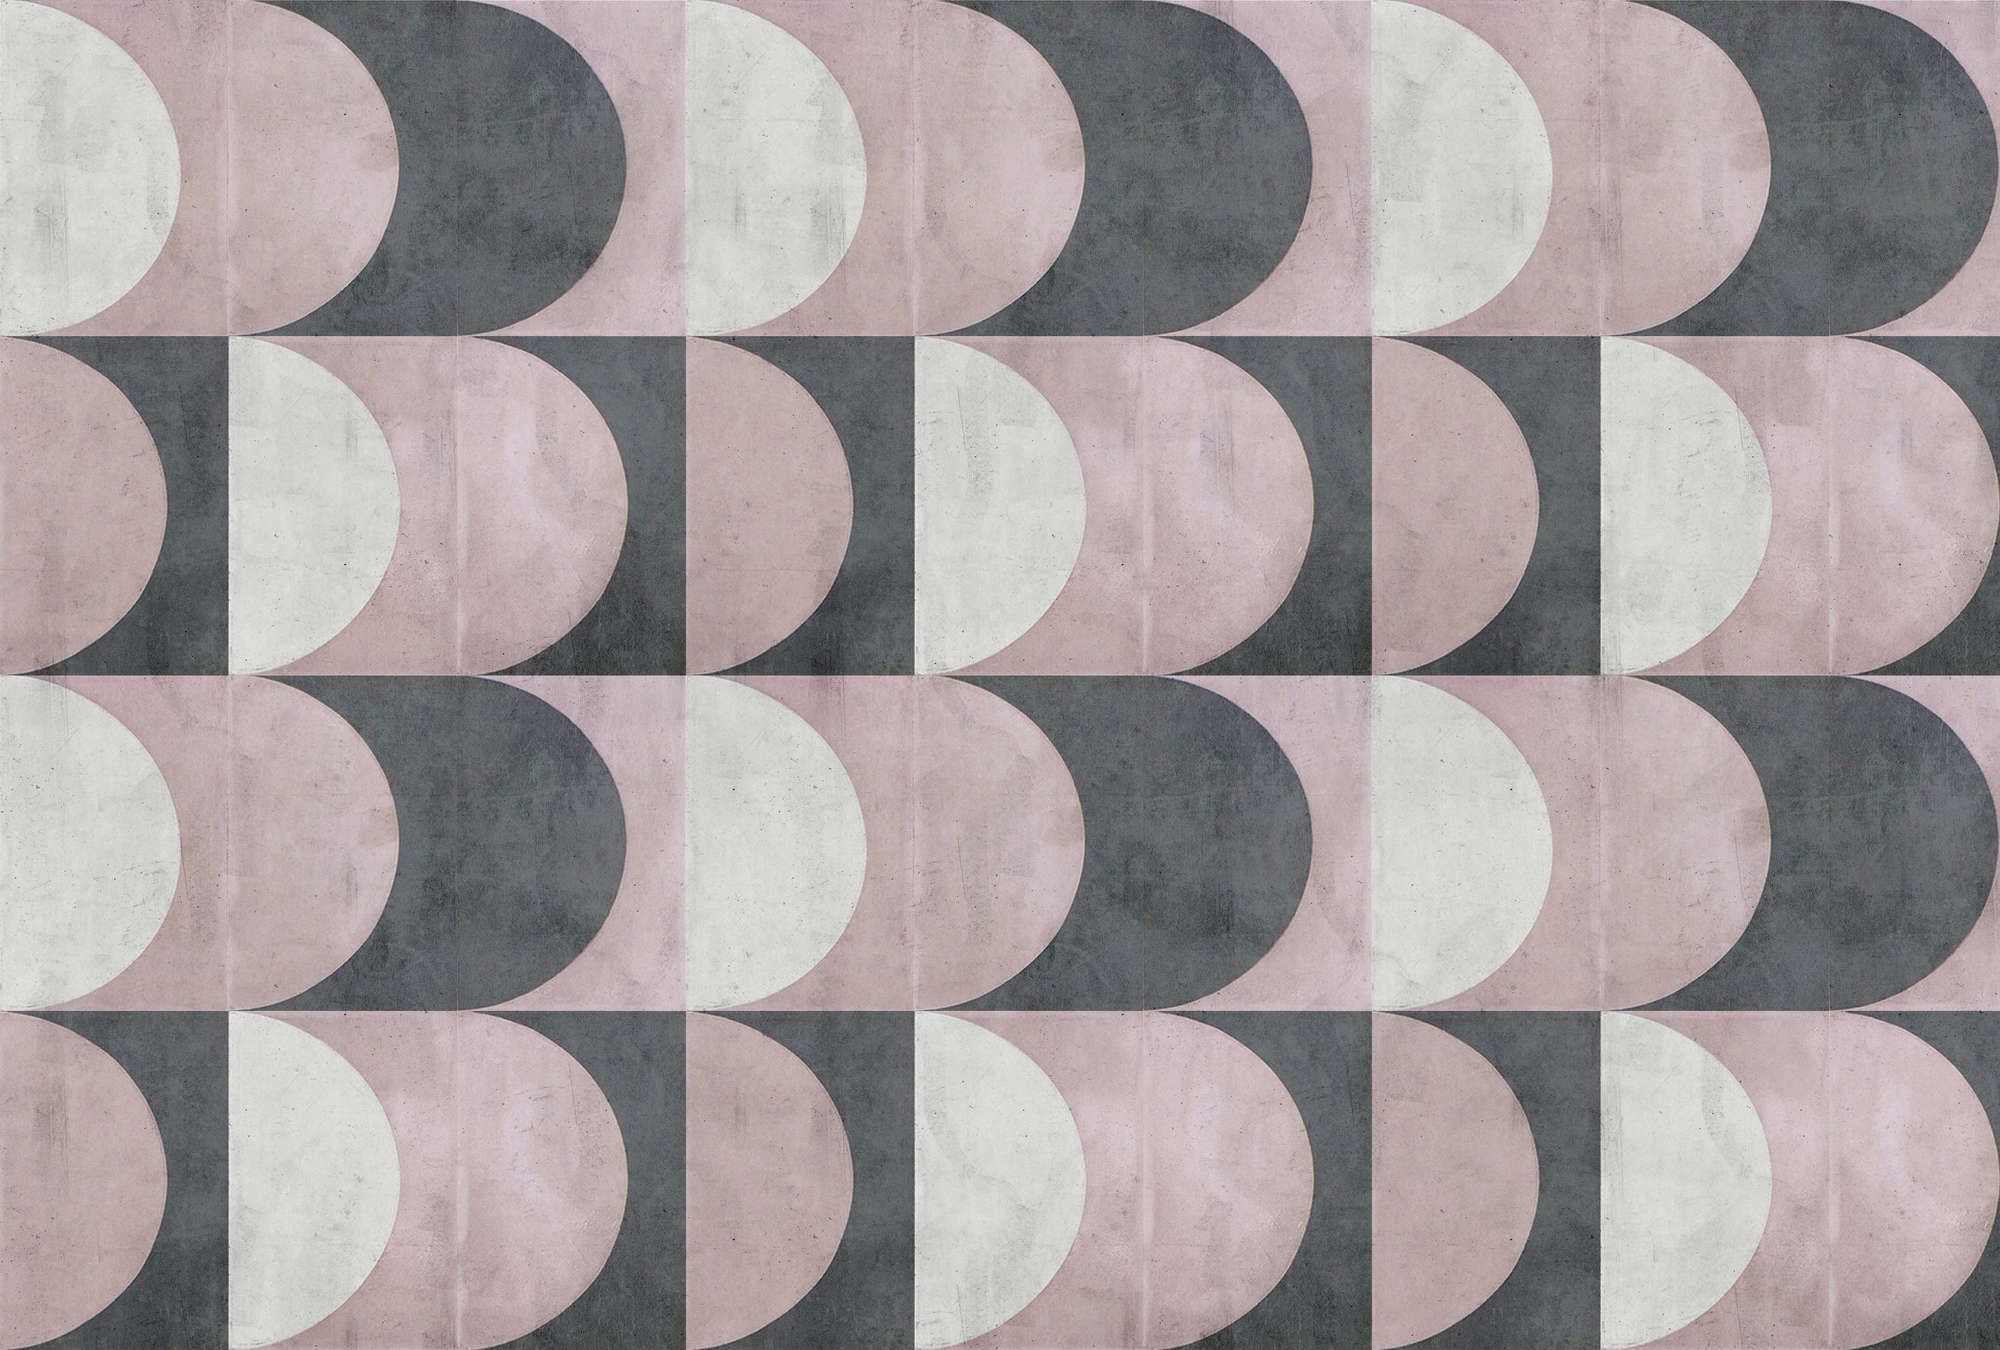             papier peint en papier panoramique »julek 1« - motif rétro imitation béton - gris, lilas | Intissé lisse, légèrement nacré
        